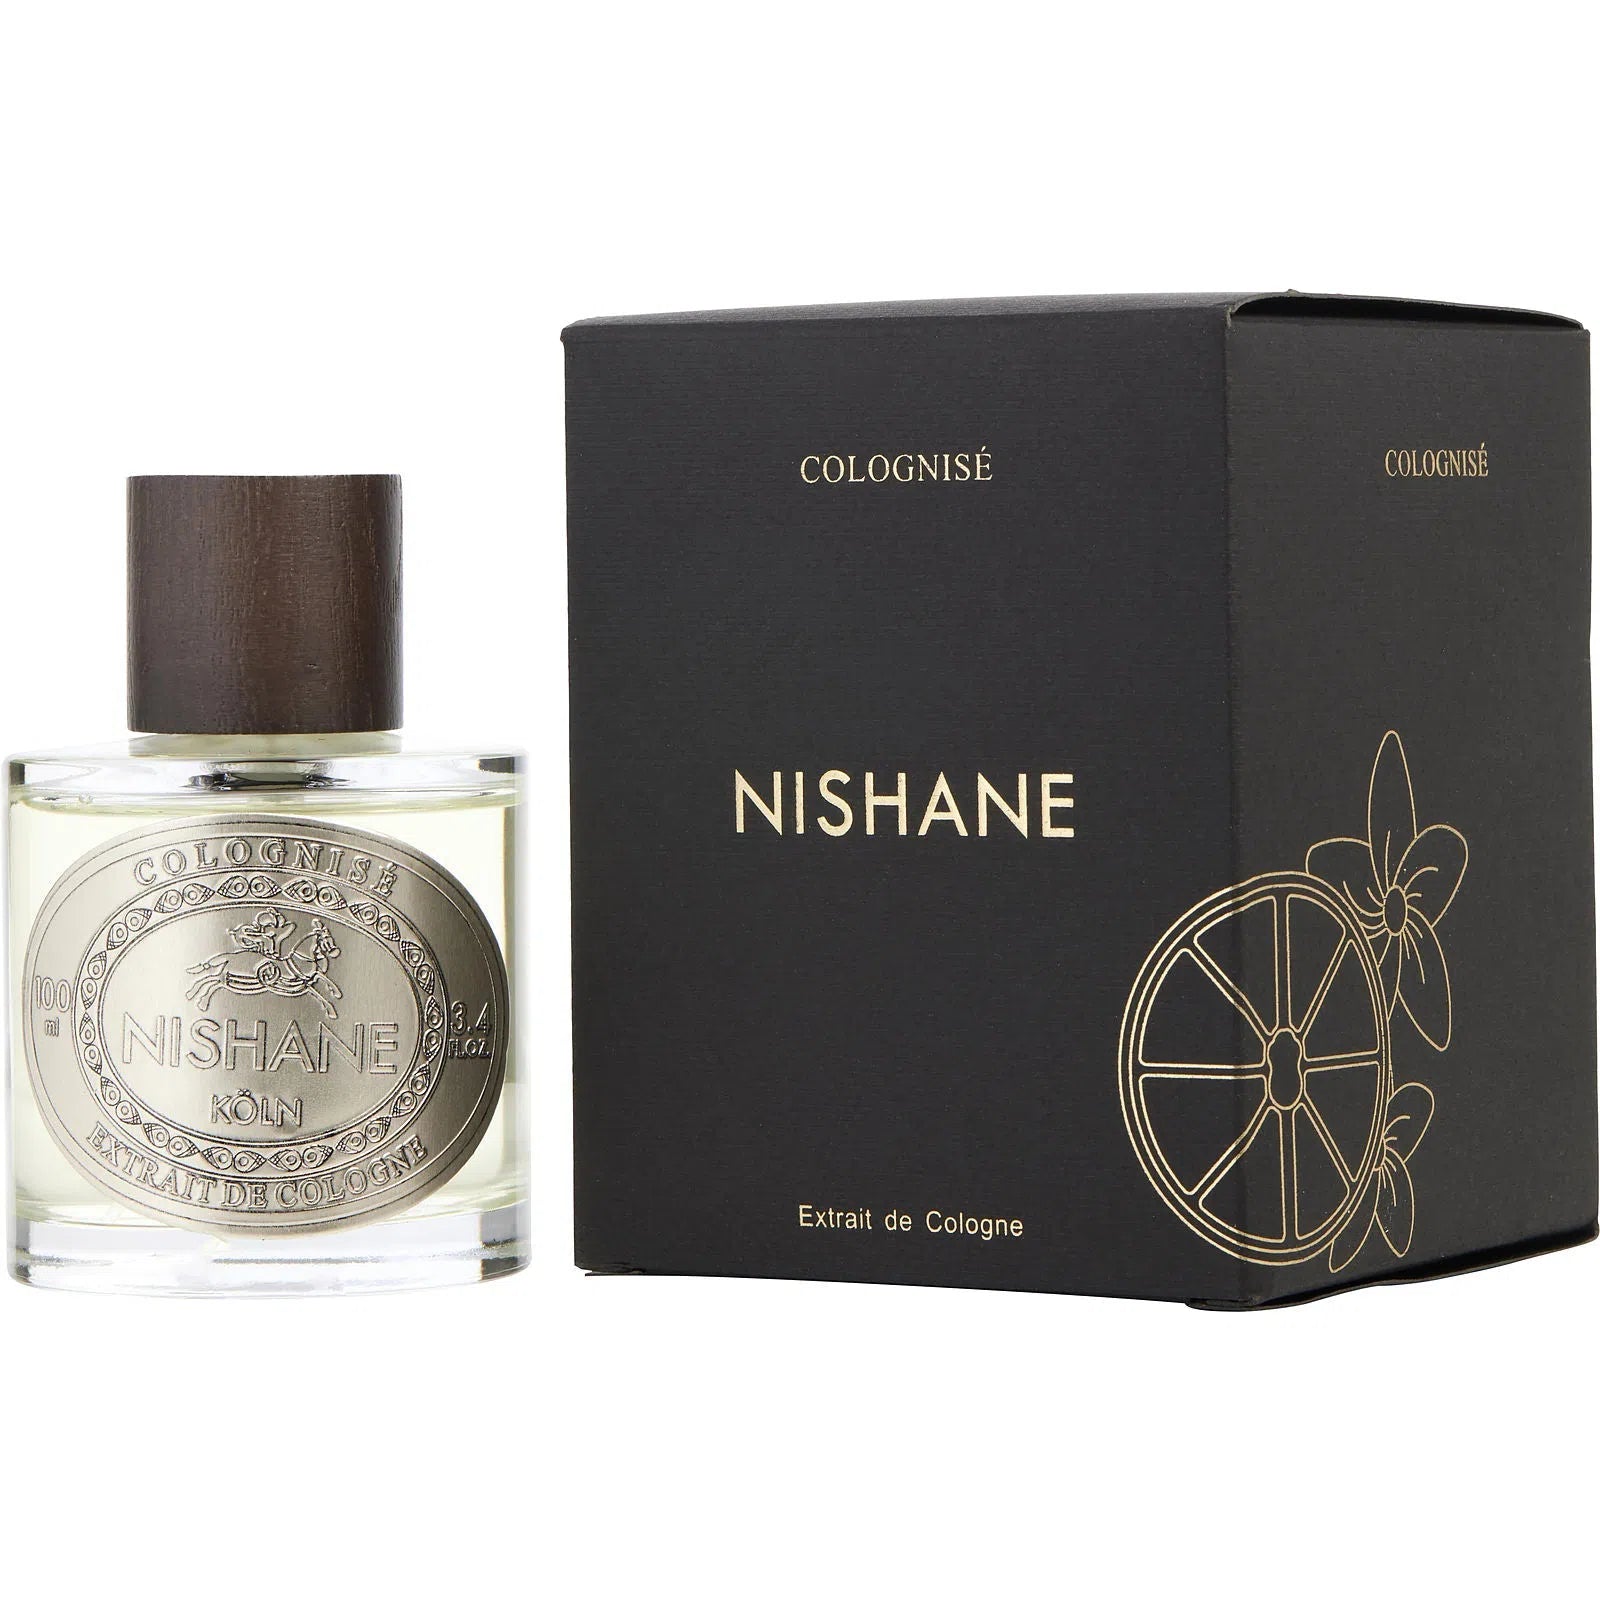 Perfume Nishane Colognise Extrait de Cologne (U) / 100 ml - 8681008055043- Prive Perfumes Honduras